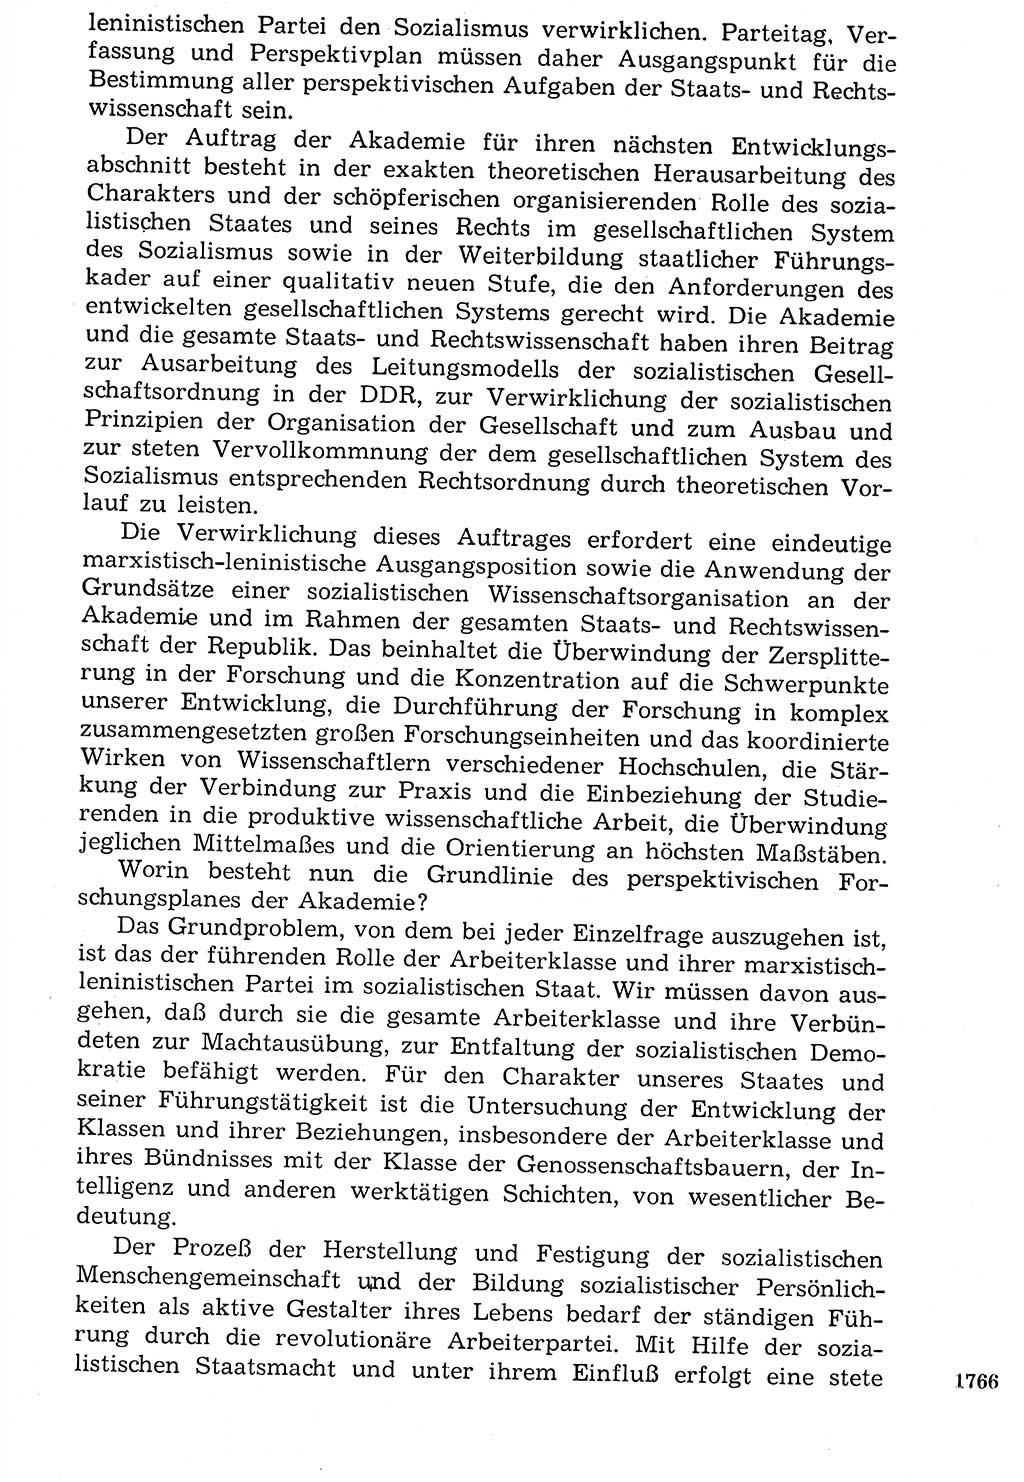 Staat und Recht (StuR), 17. Jahrgang [Deutsche Demokratische Republik (DDR)] 1968, Seite 1766 (StuR DDR 1968, S. 1766)